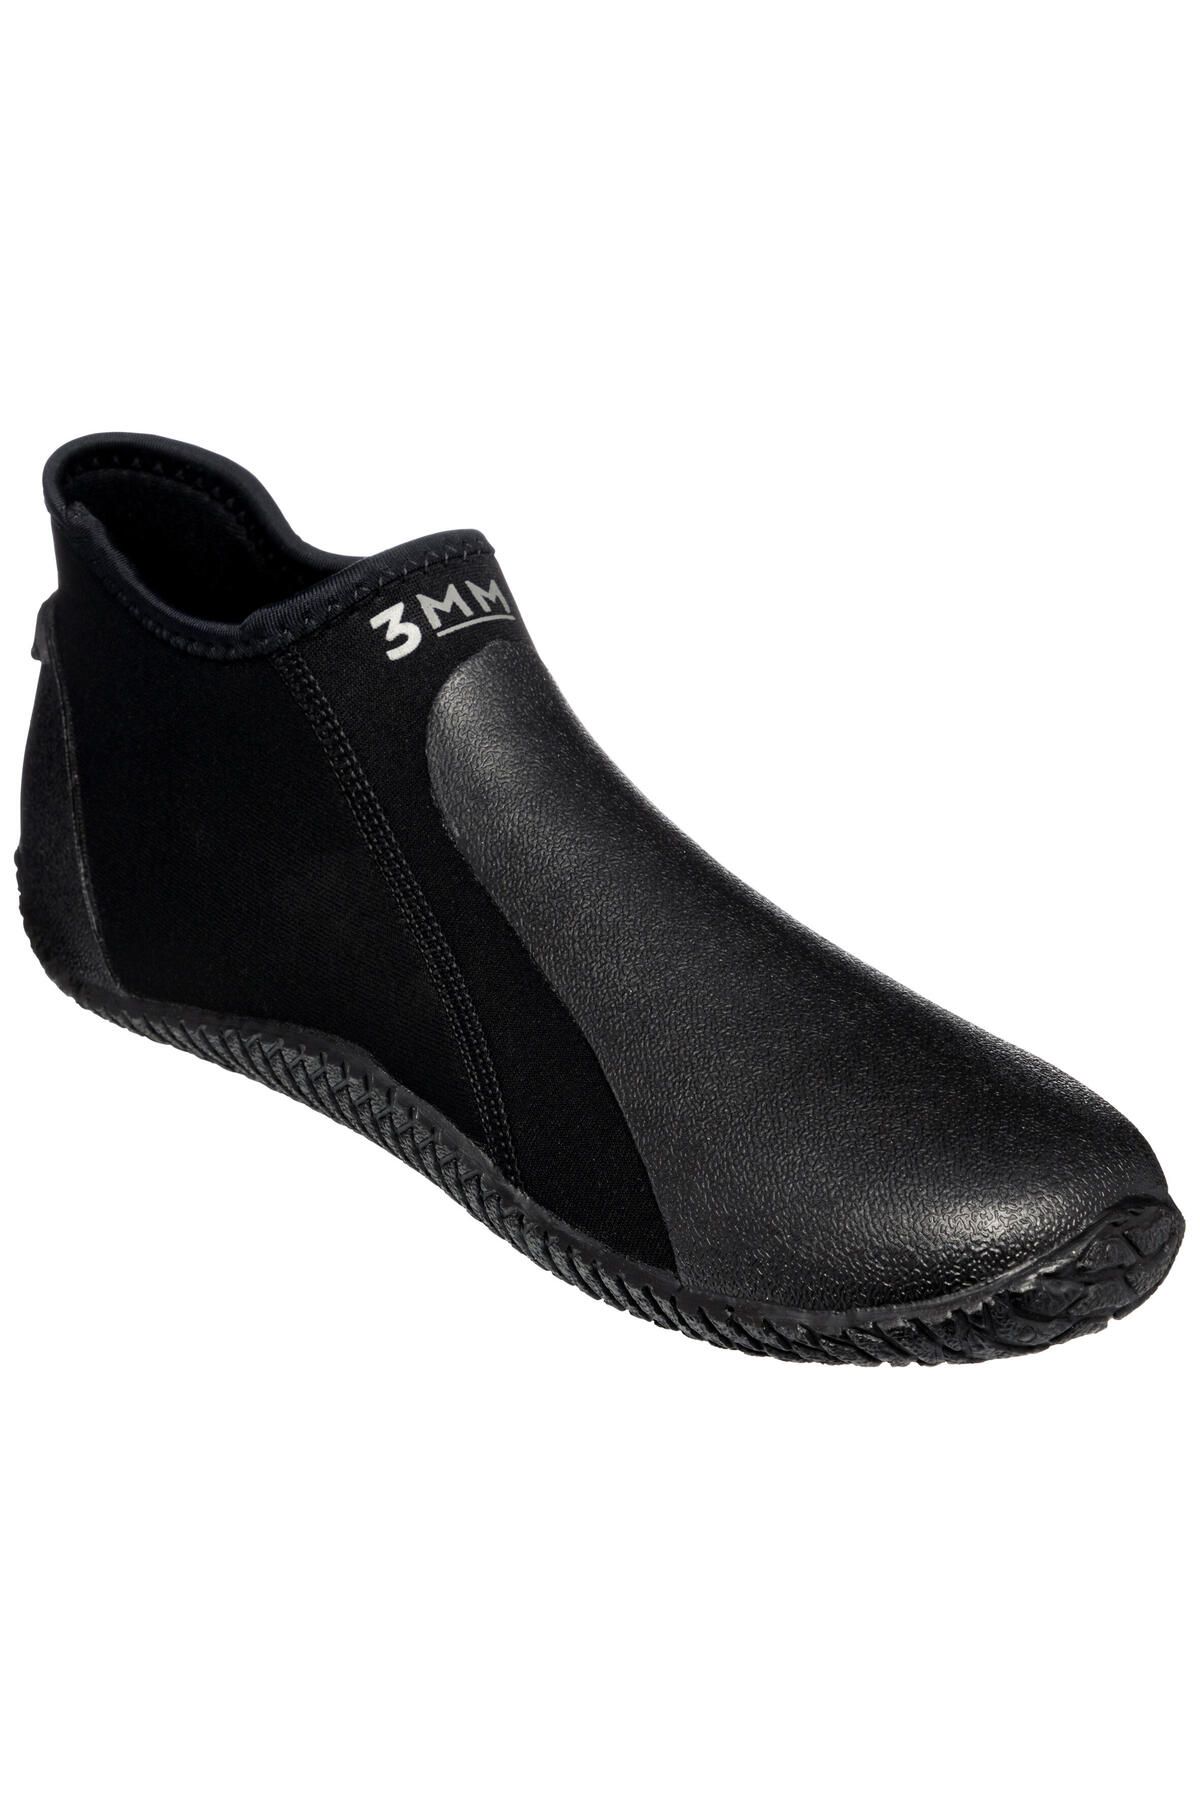 Decathlon Neopren Dalış Iç Ayakkabı - 3 Mm - Siyah